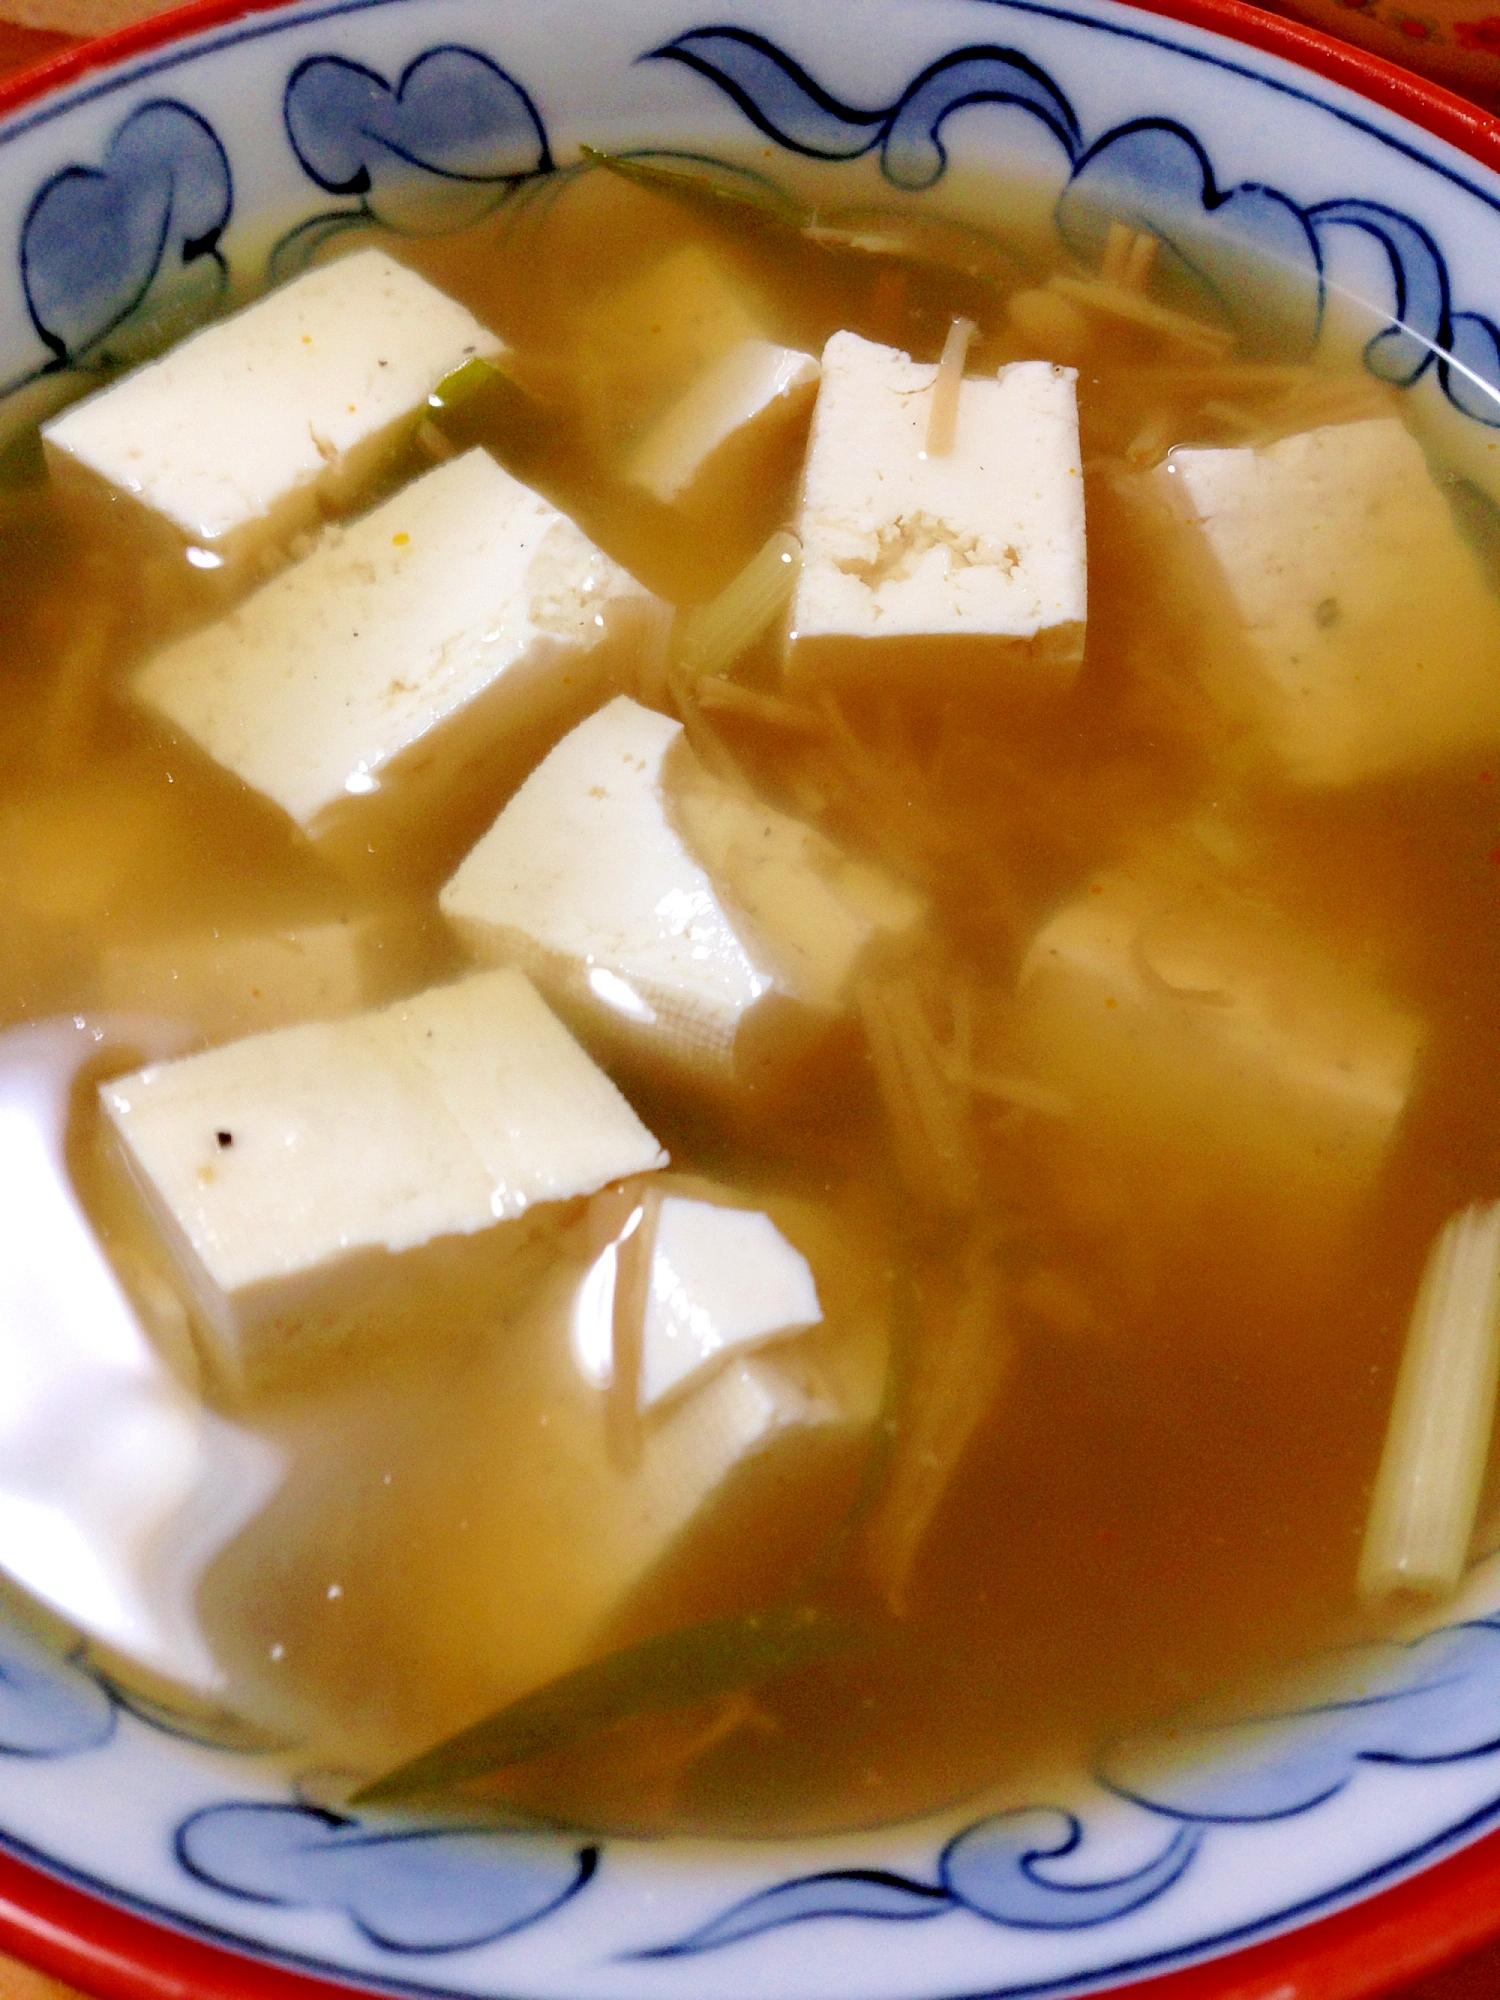 小腹が空いたら◎豆腐となめ茸のスープ